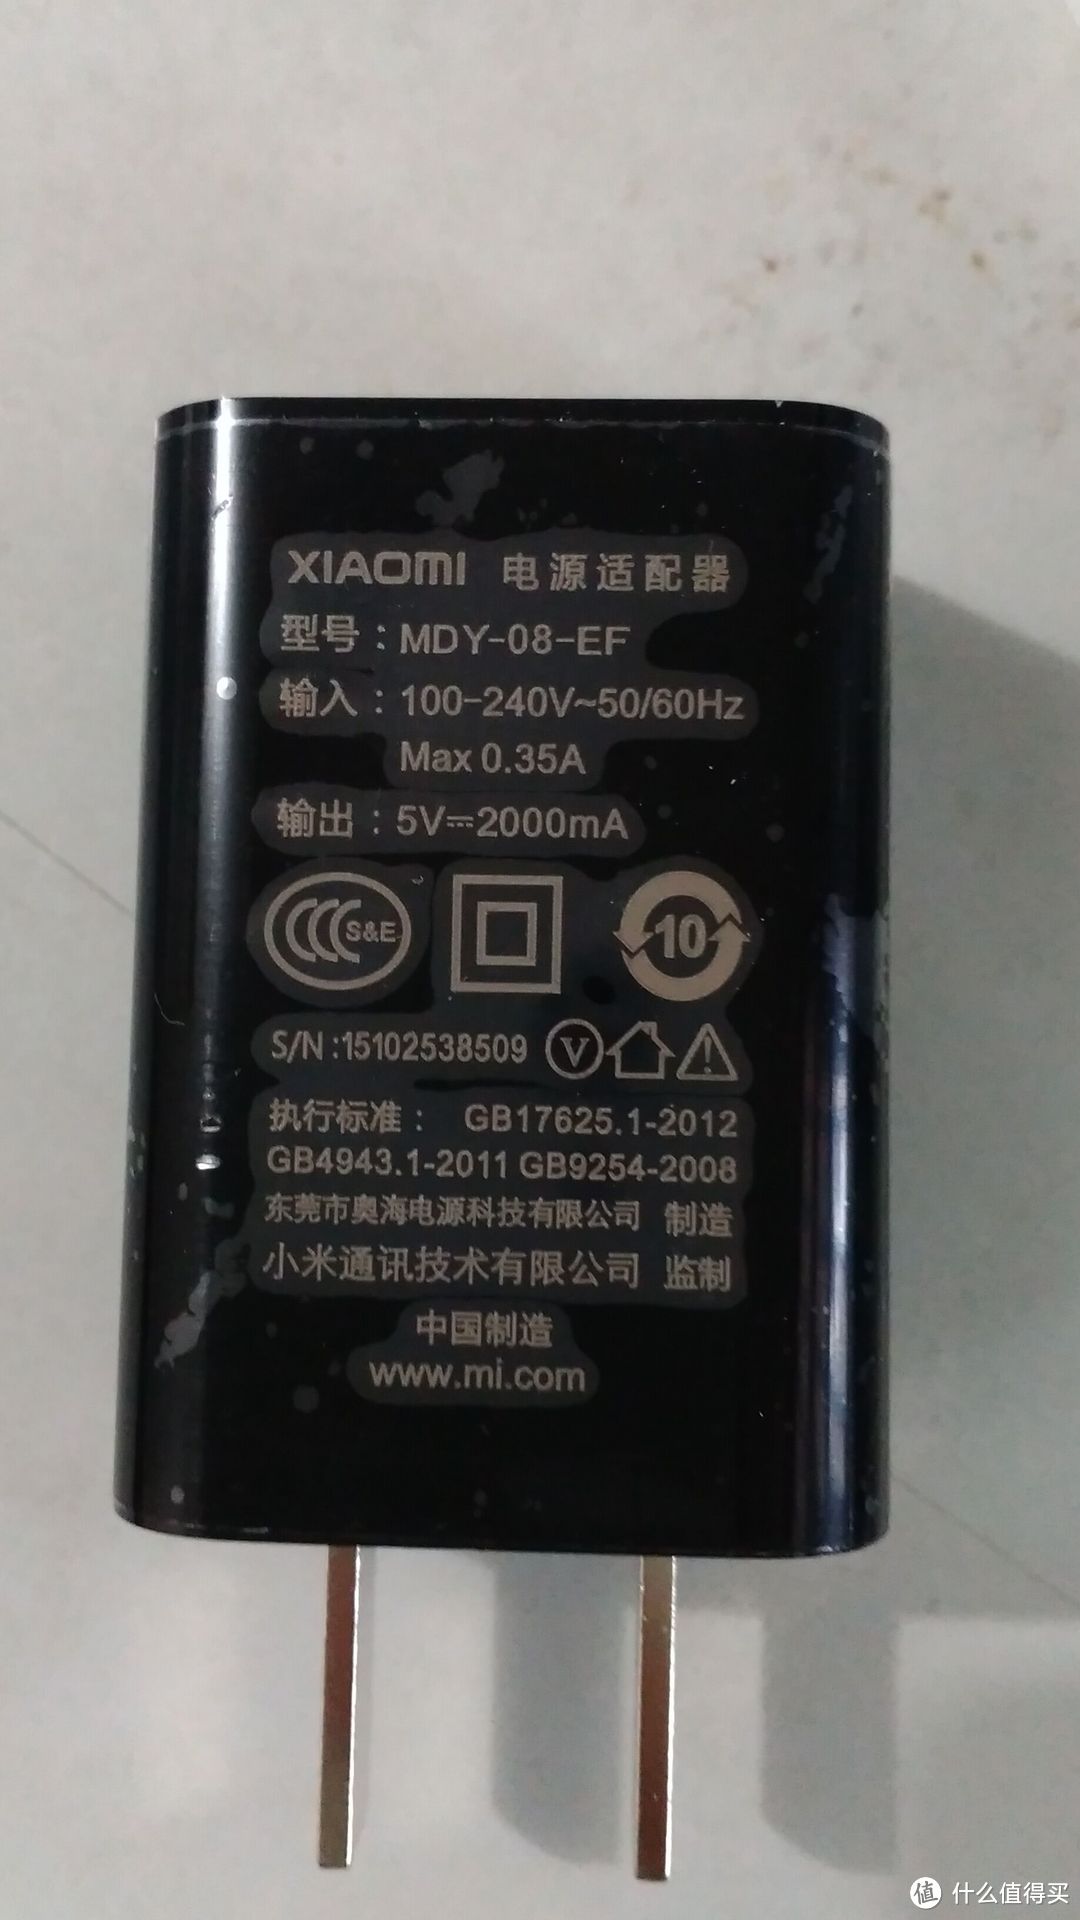 轻度手机用户 红米 NOTE 3 高配套装版 开箱